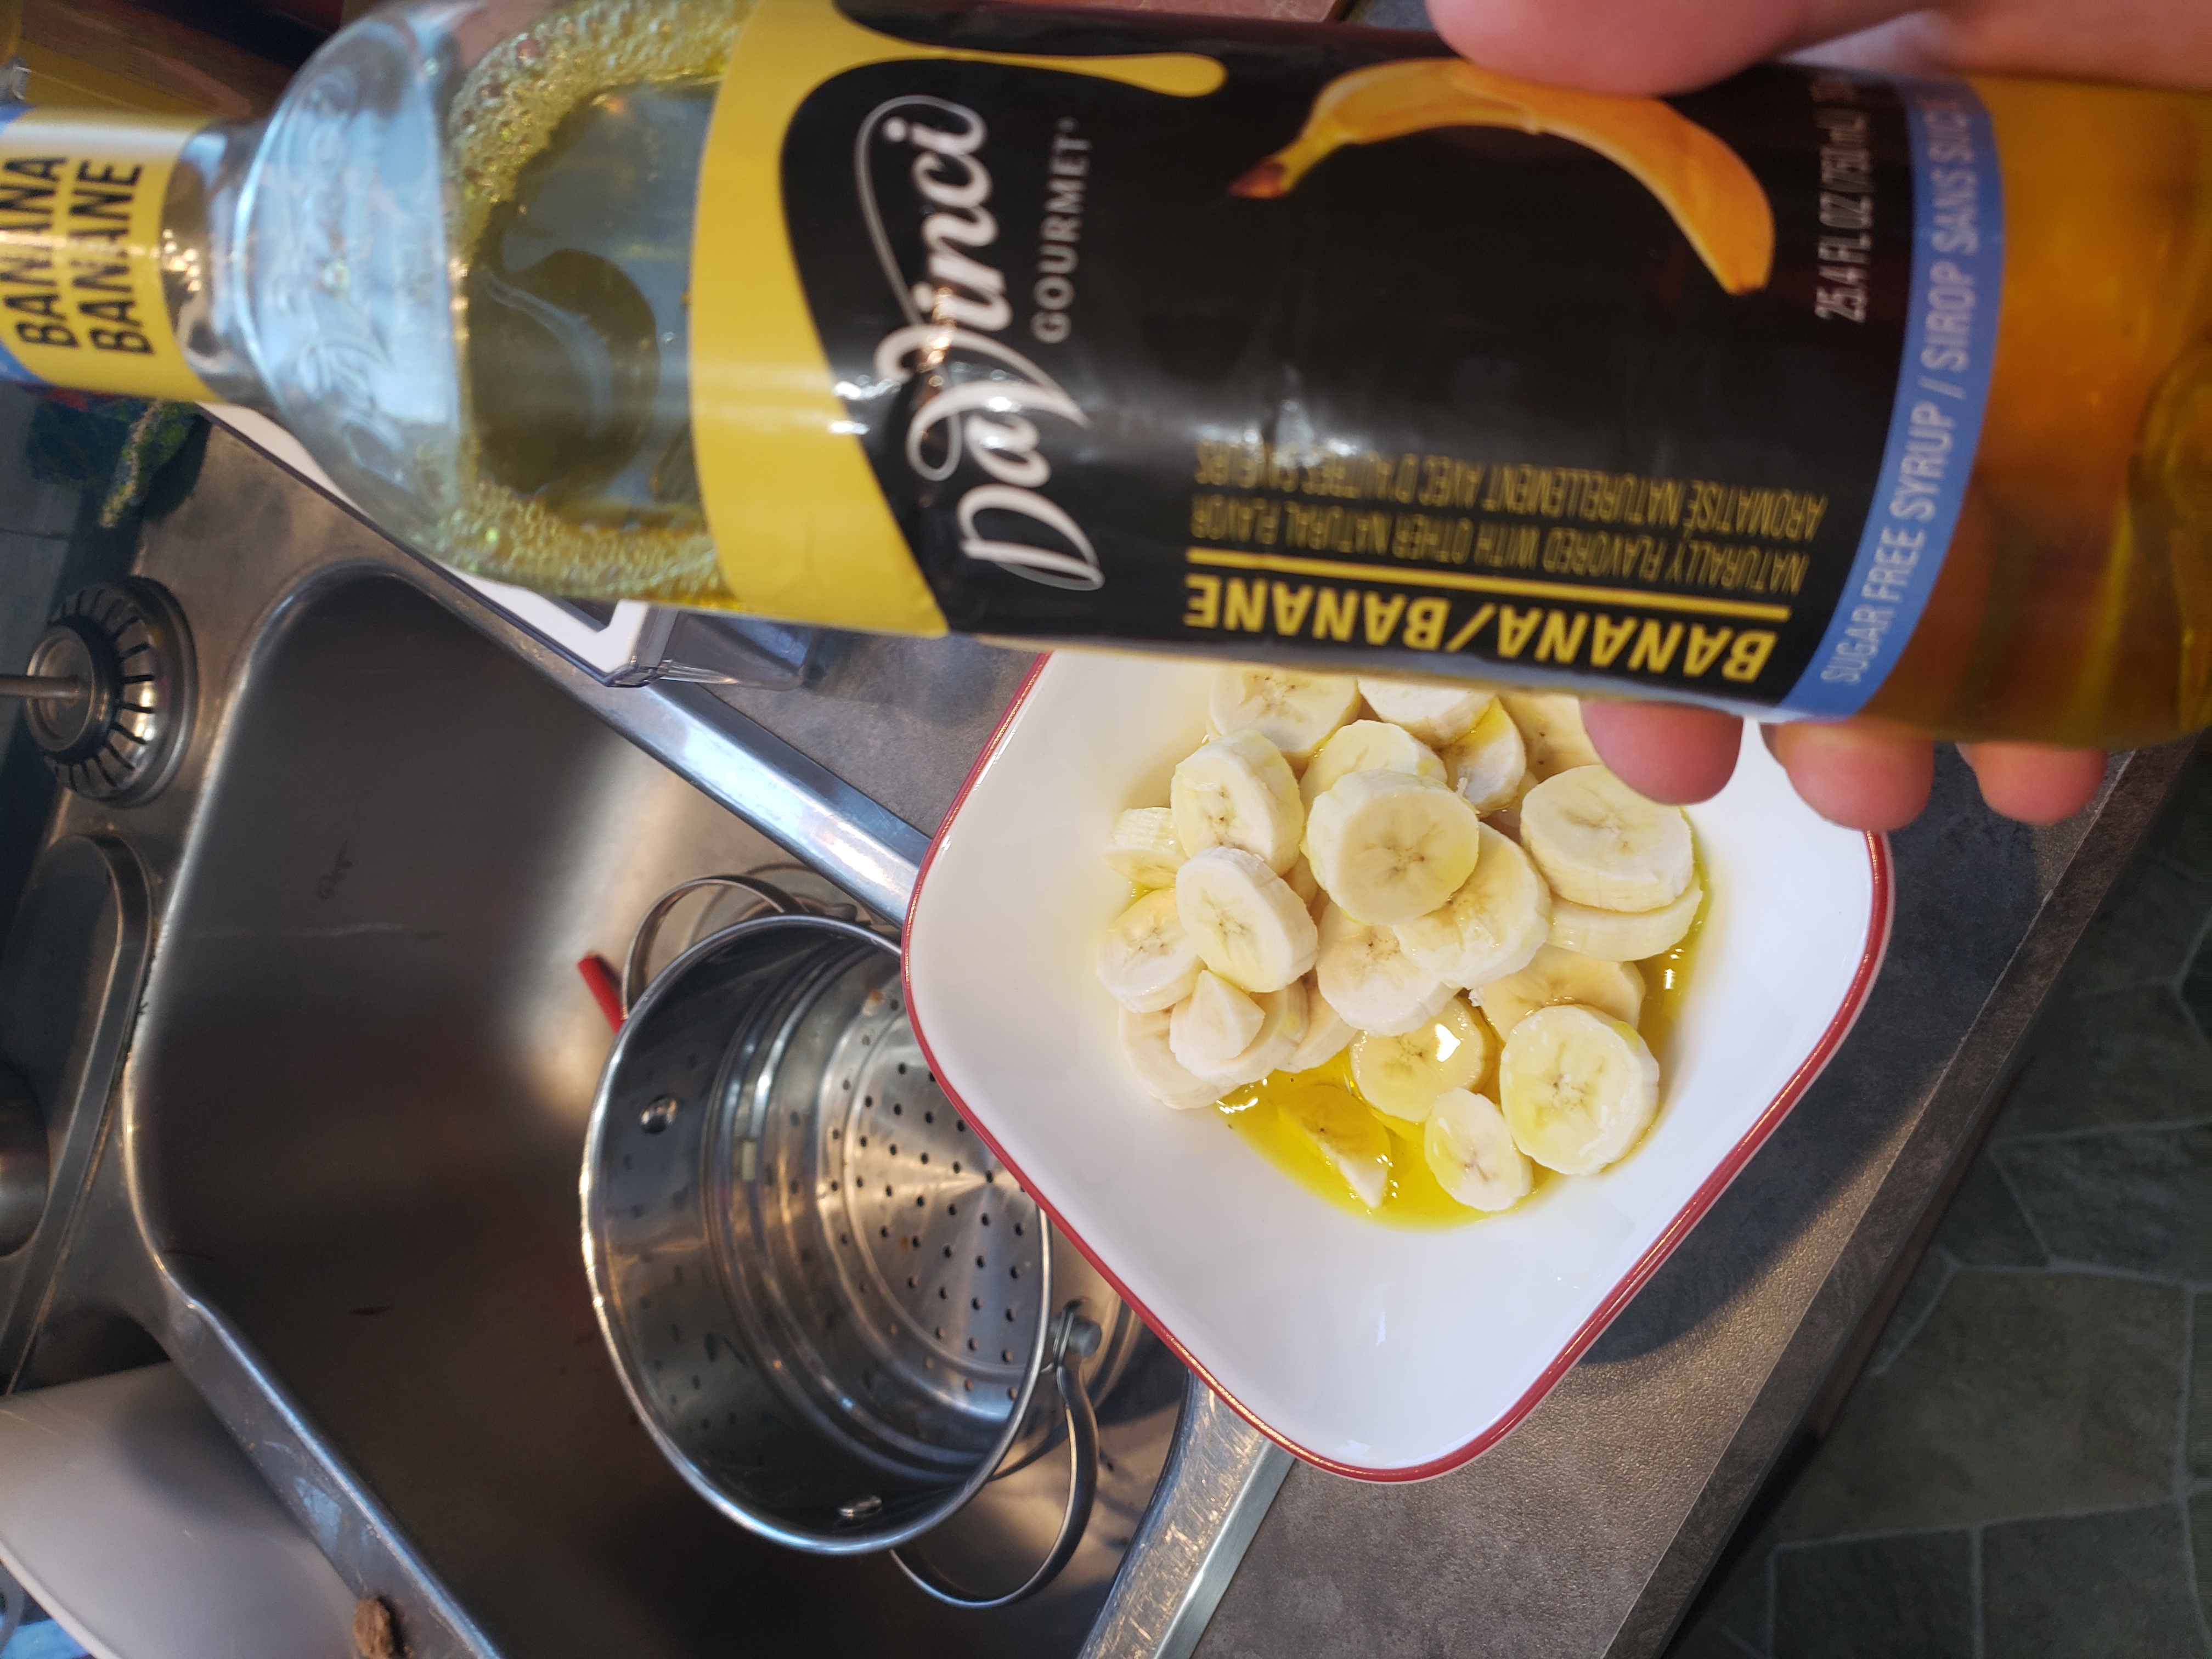 Marinating The Bananas With Banana Syrup